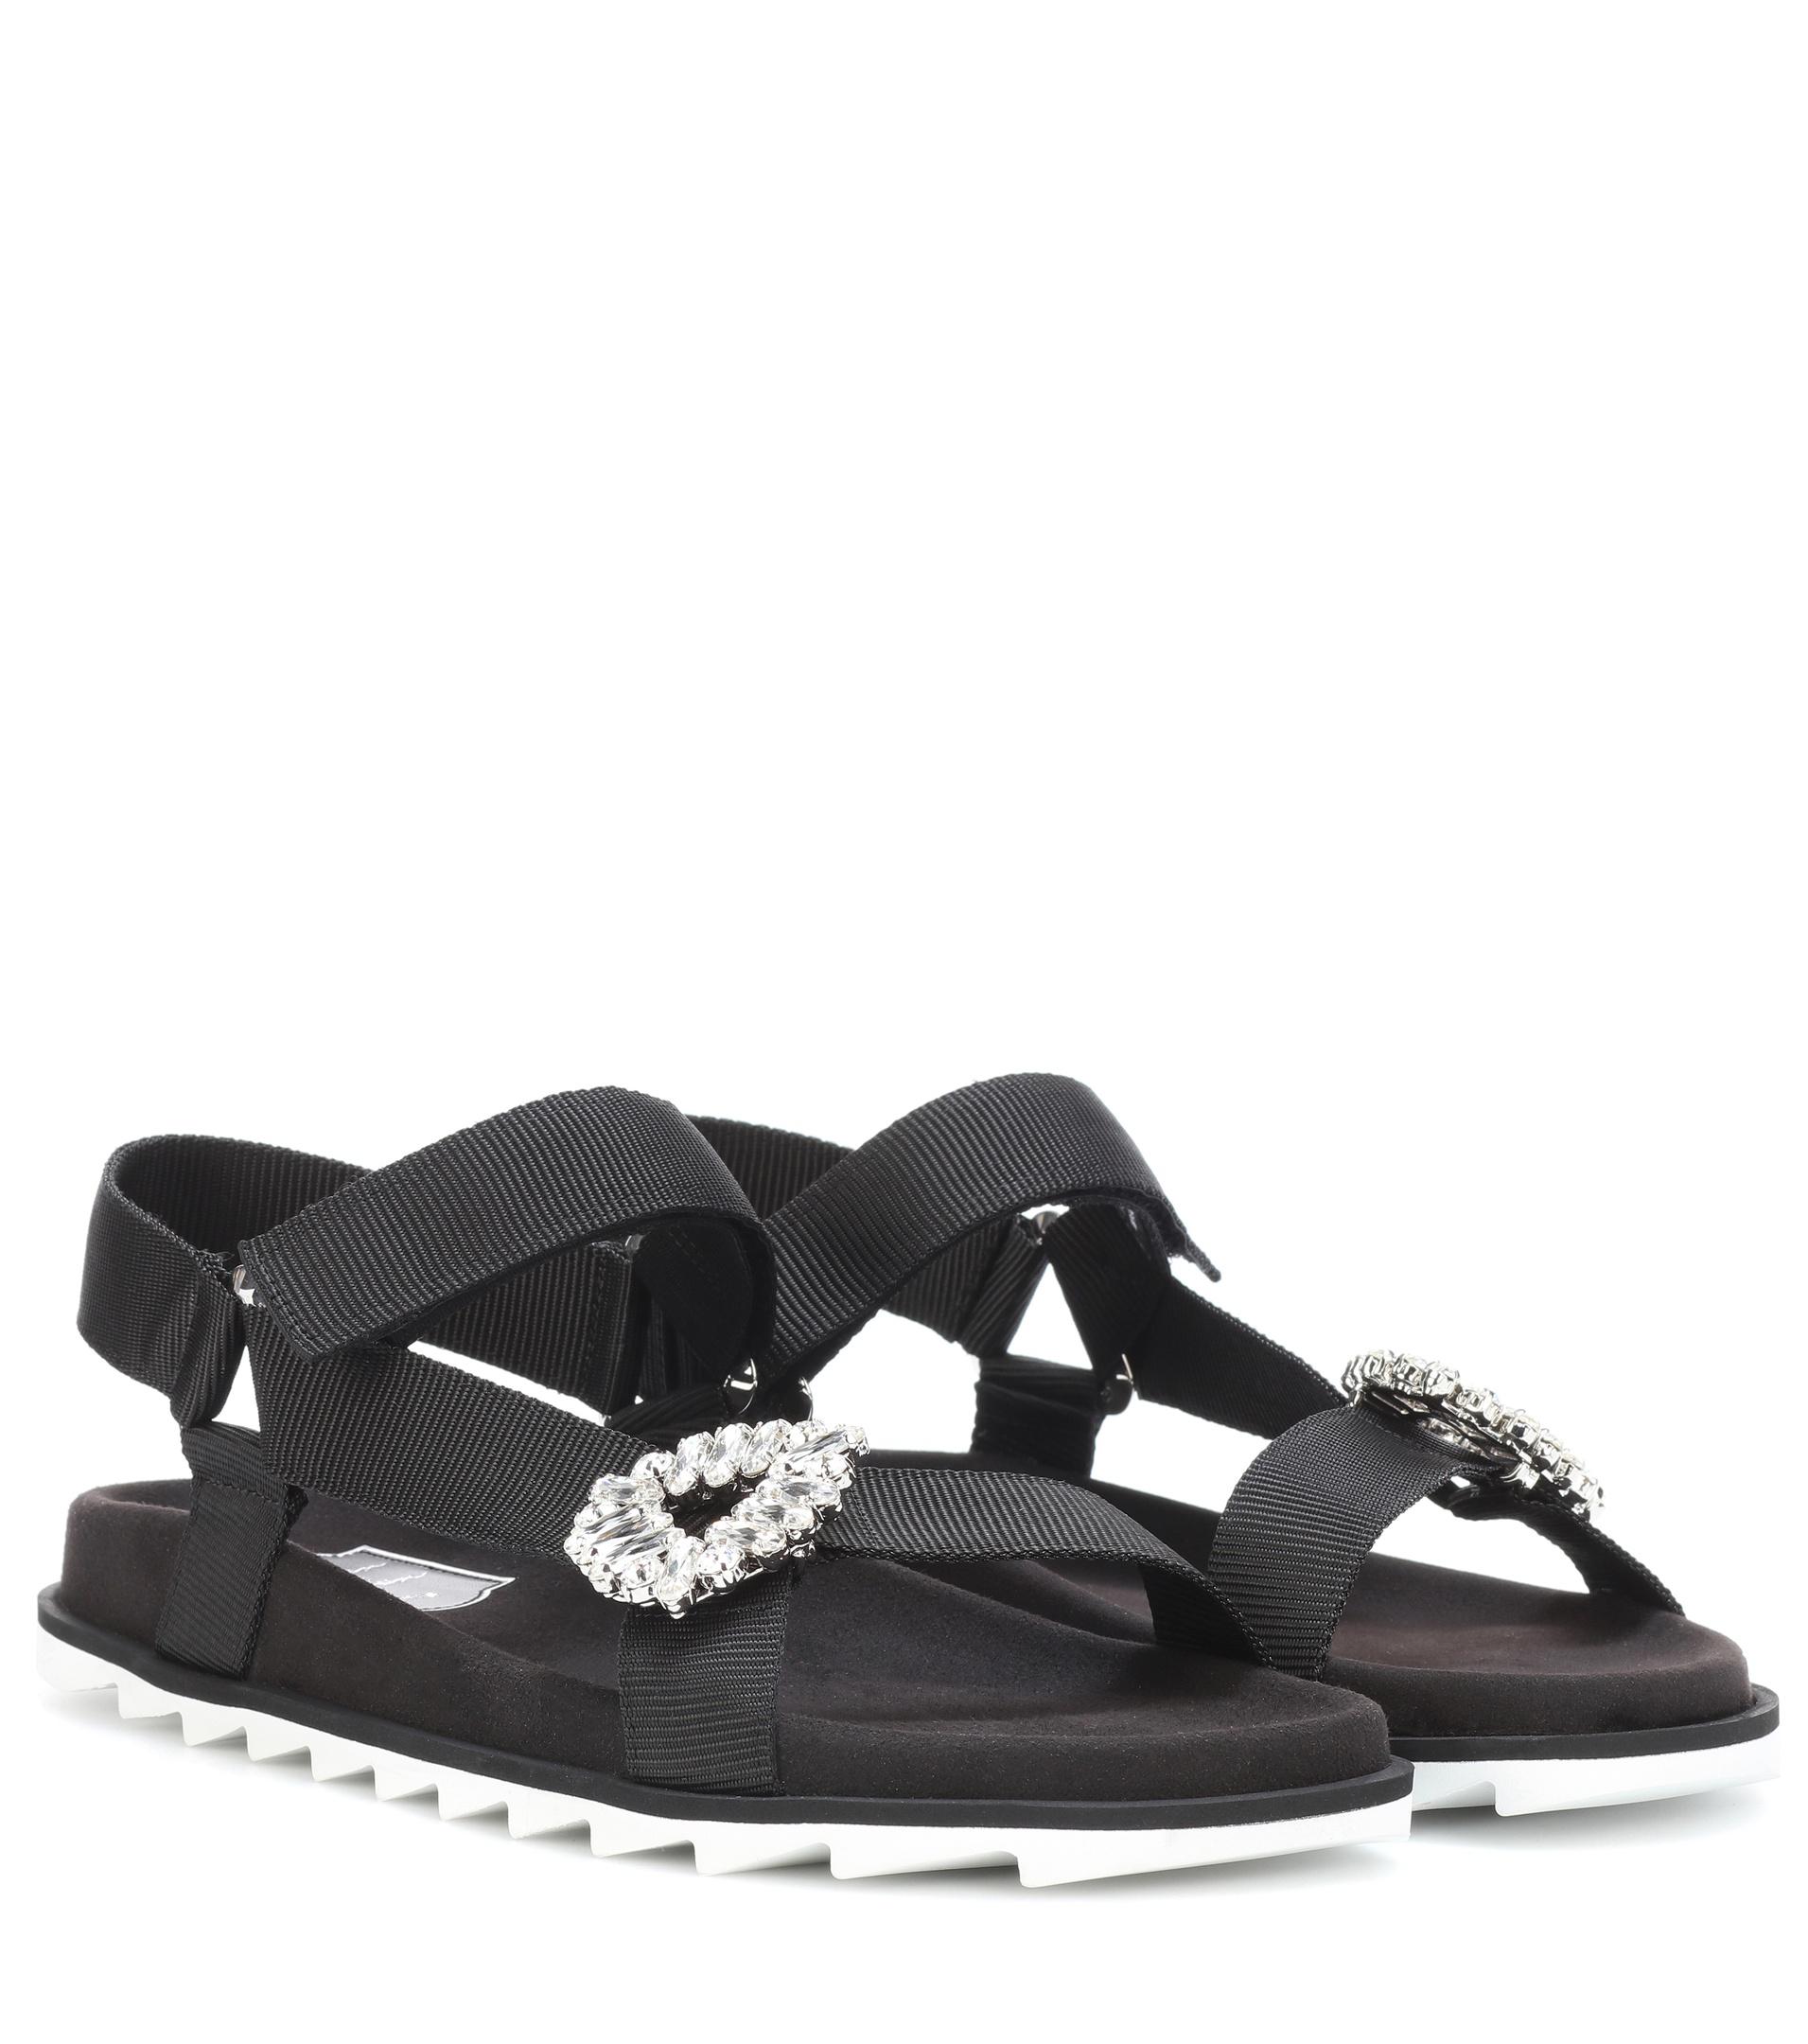 Roger Vivier Crystal-embellished Sandals in Black - Lyst